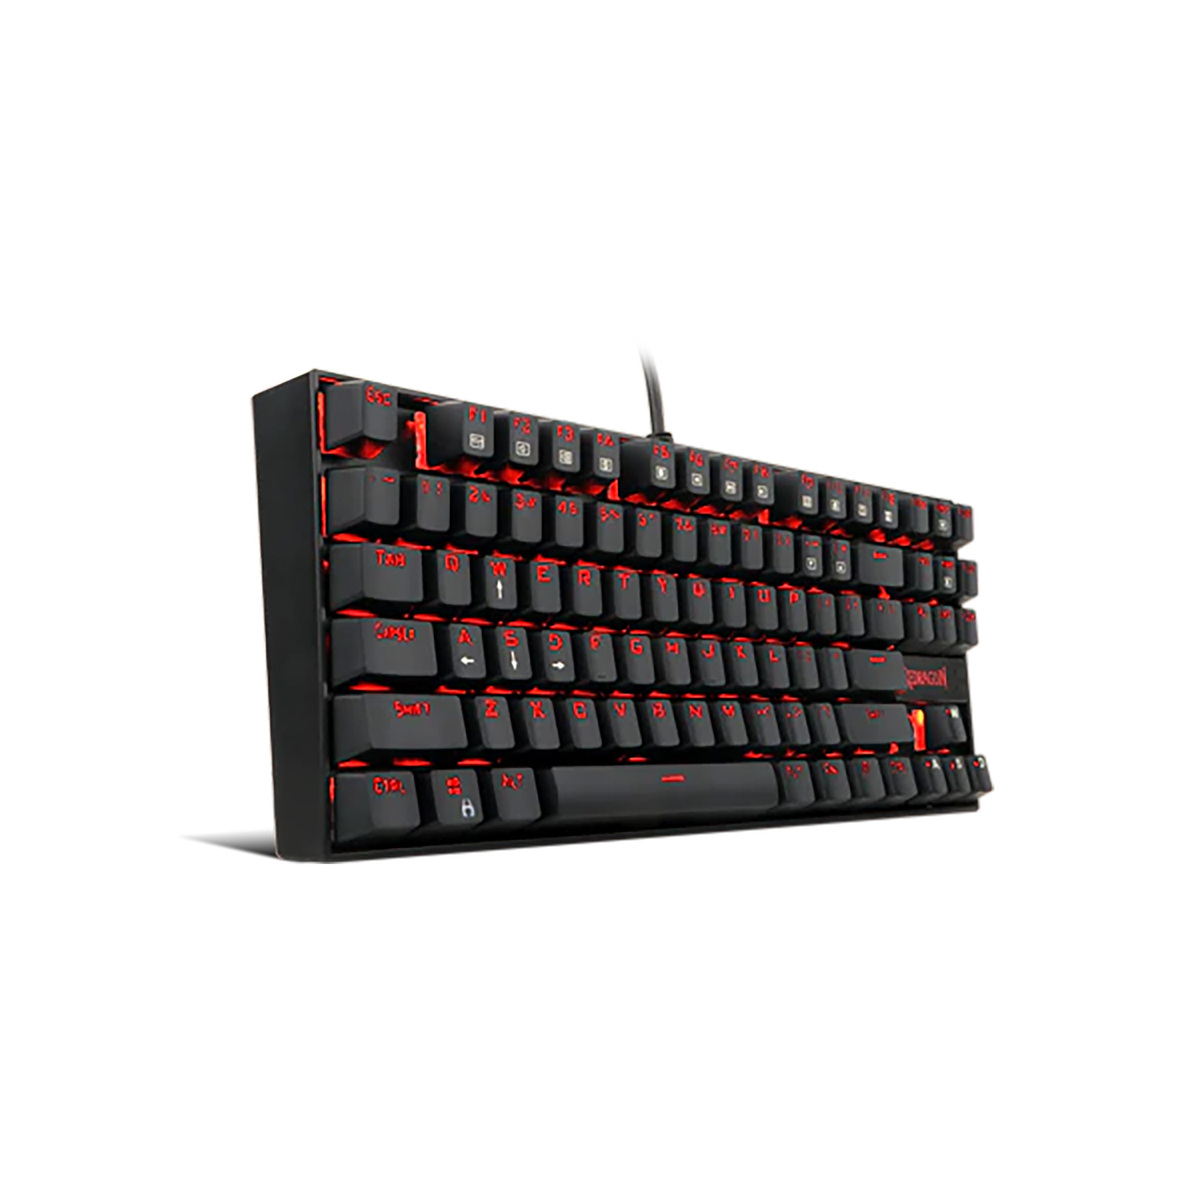 ريدراجون كومارا لوحة مفاتيح الألعاب الميكانيكية K552RGB-1 بمفاتيح حمراء باللغة الإنجليزية فقط